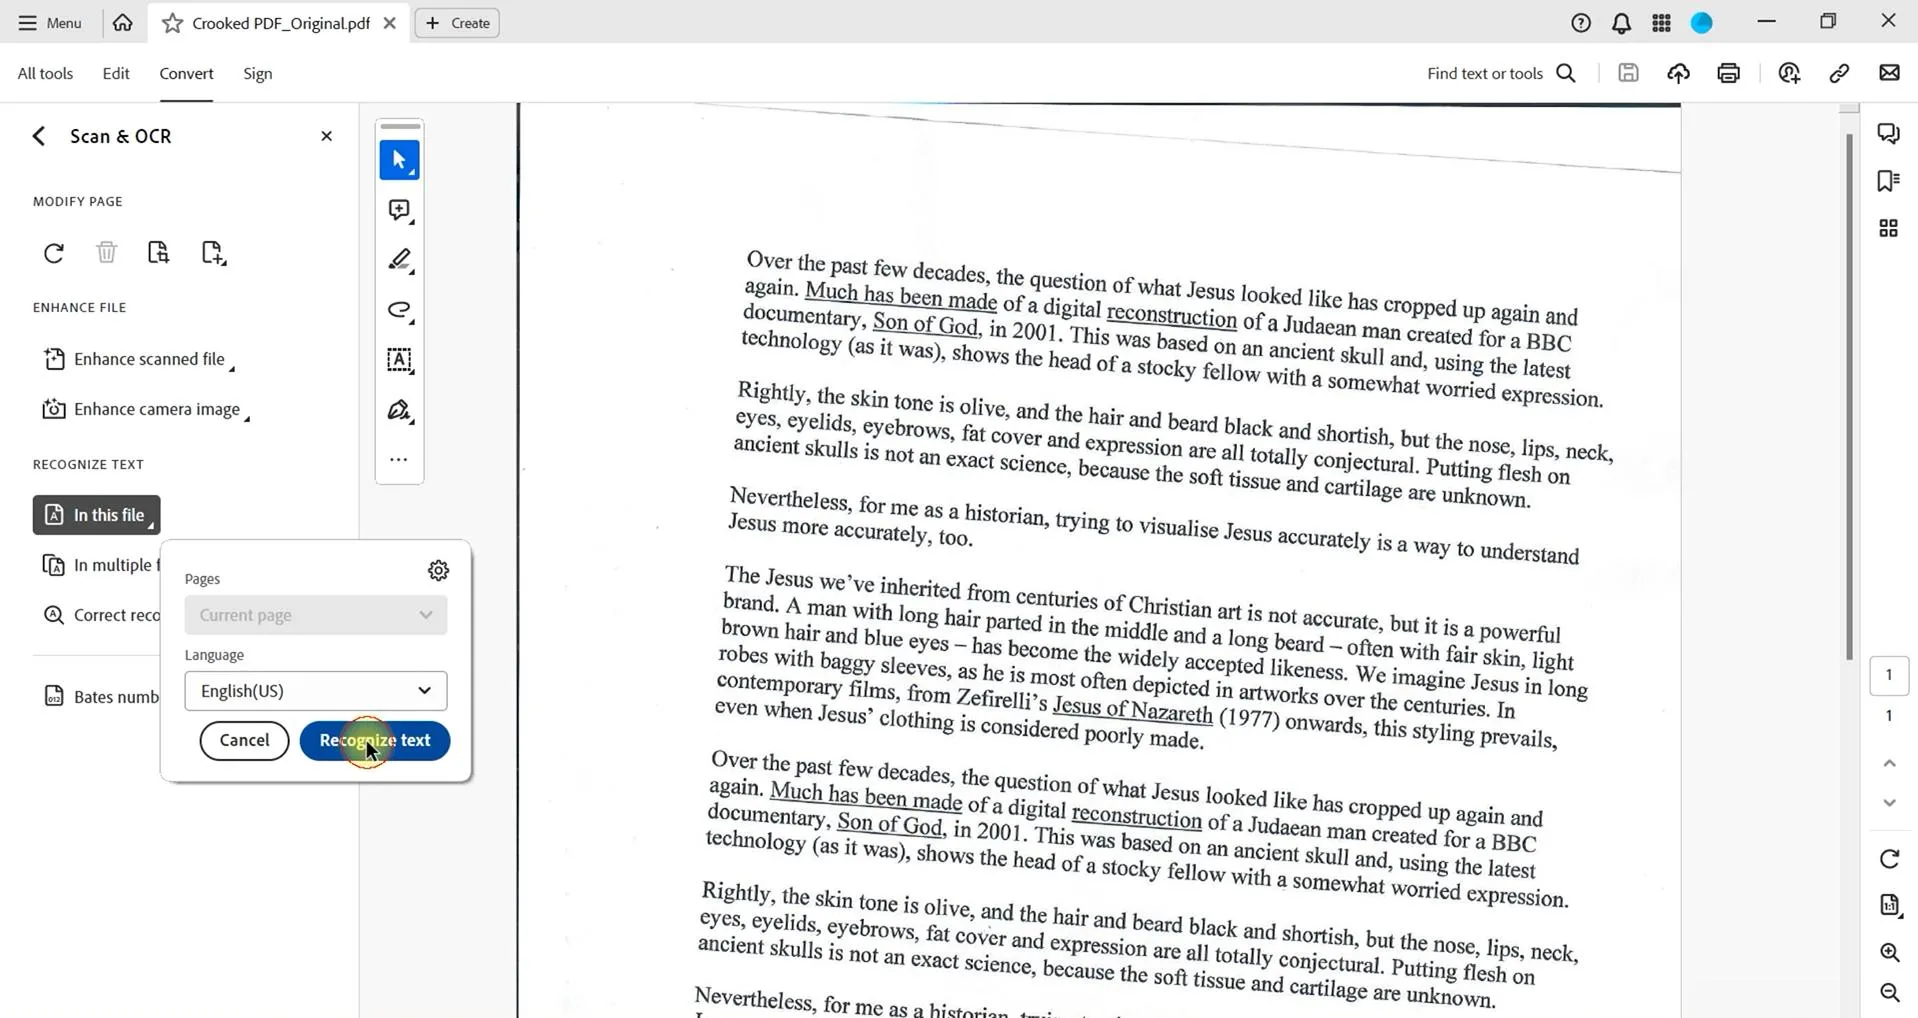 Enderezar un PDF escaneado seleccione el idioma para enderezar un PDF escaneado con Adobe Acrobat